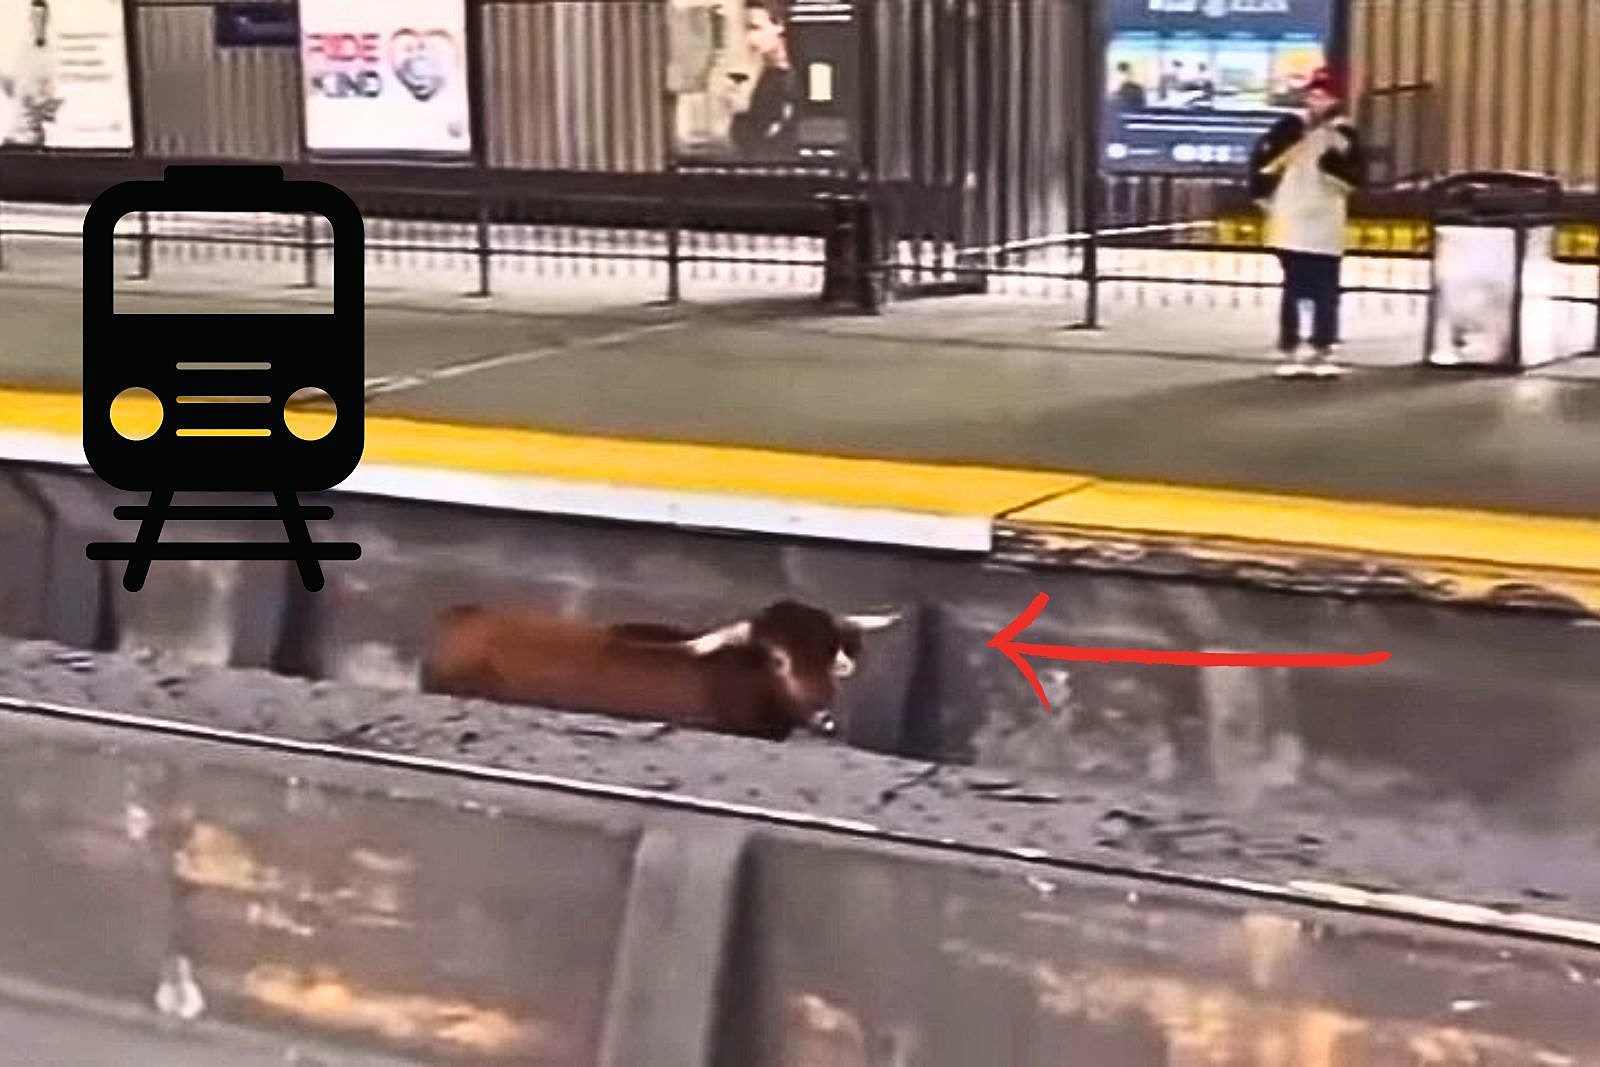 Bull Loose On NJ Train Tracks